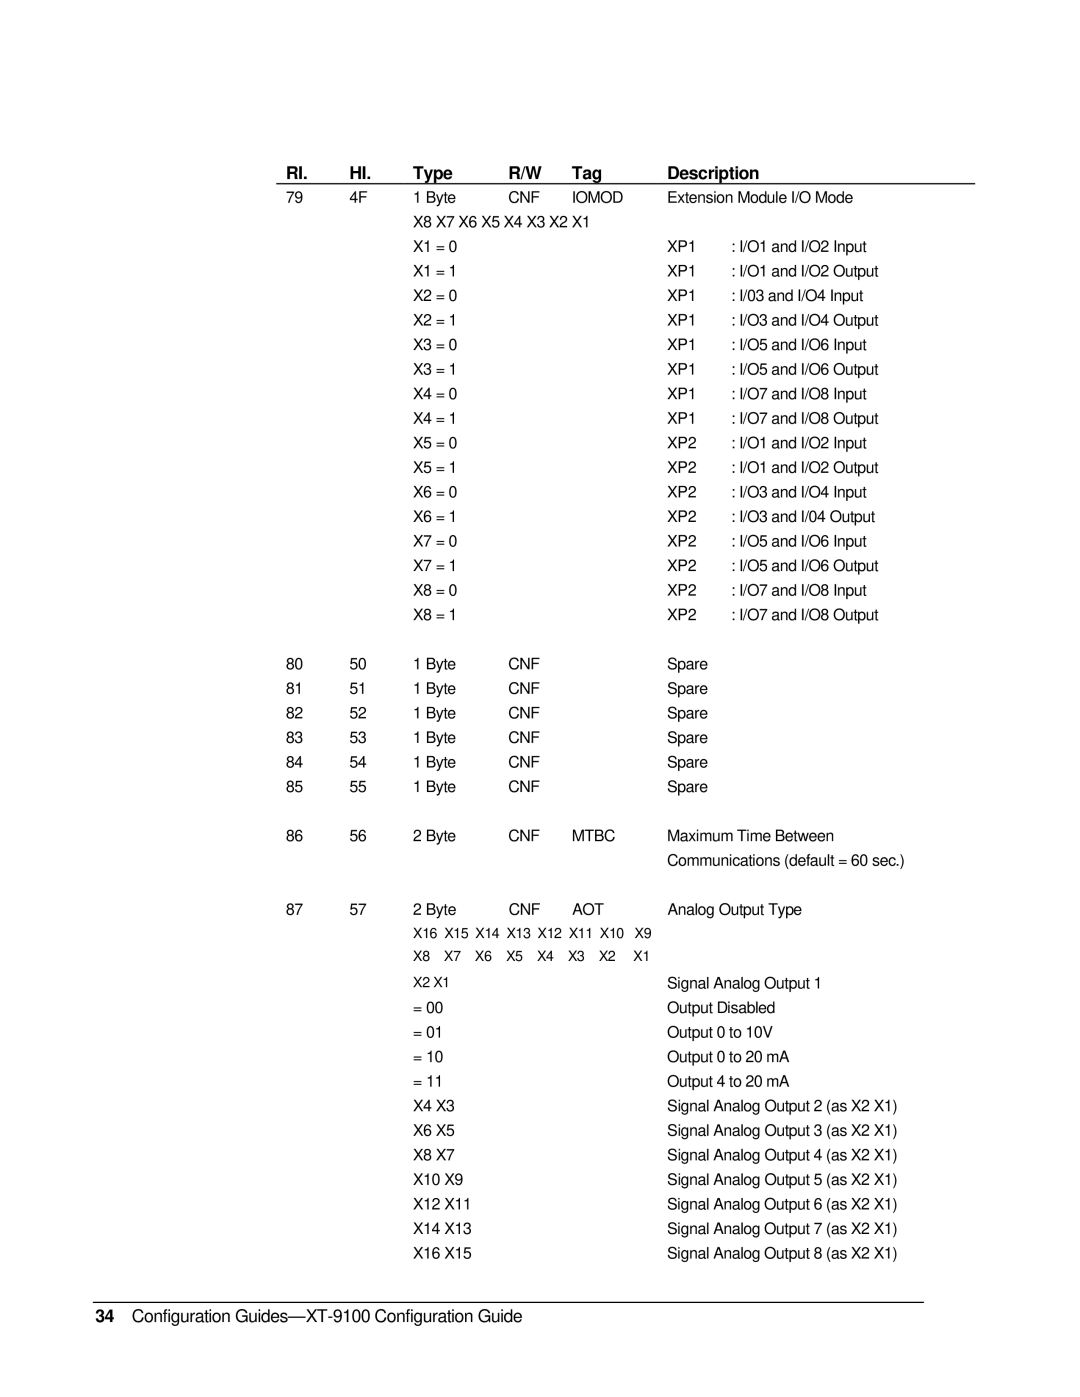 Johnson Controls XP-910x appendix Type, R/W Tag, Description, Configuration Guides-XT-9100 Configuration Guide 